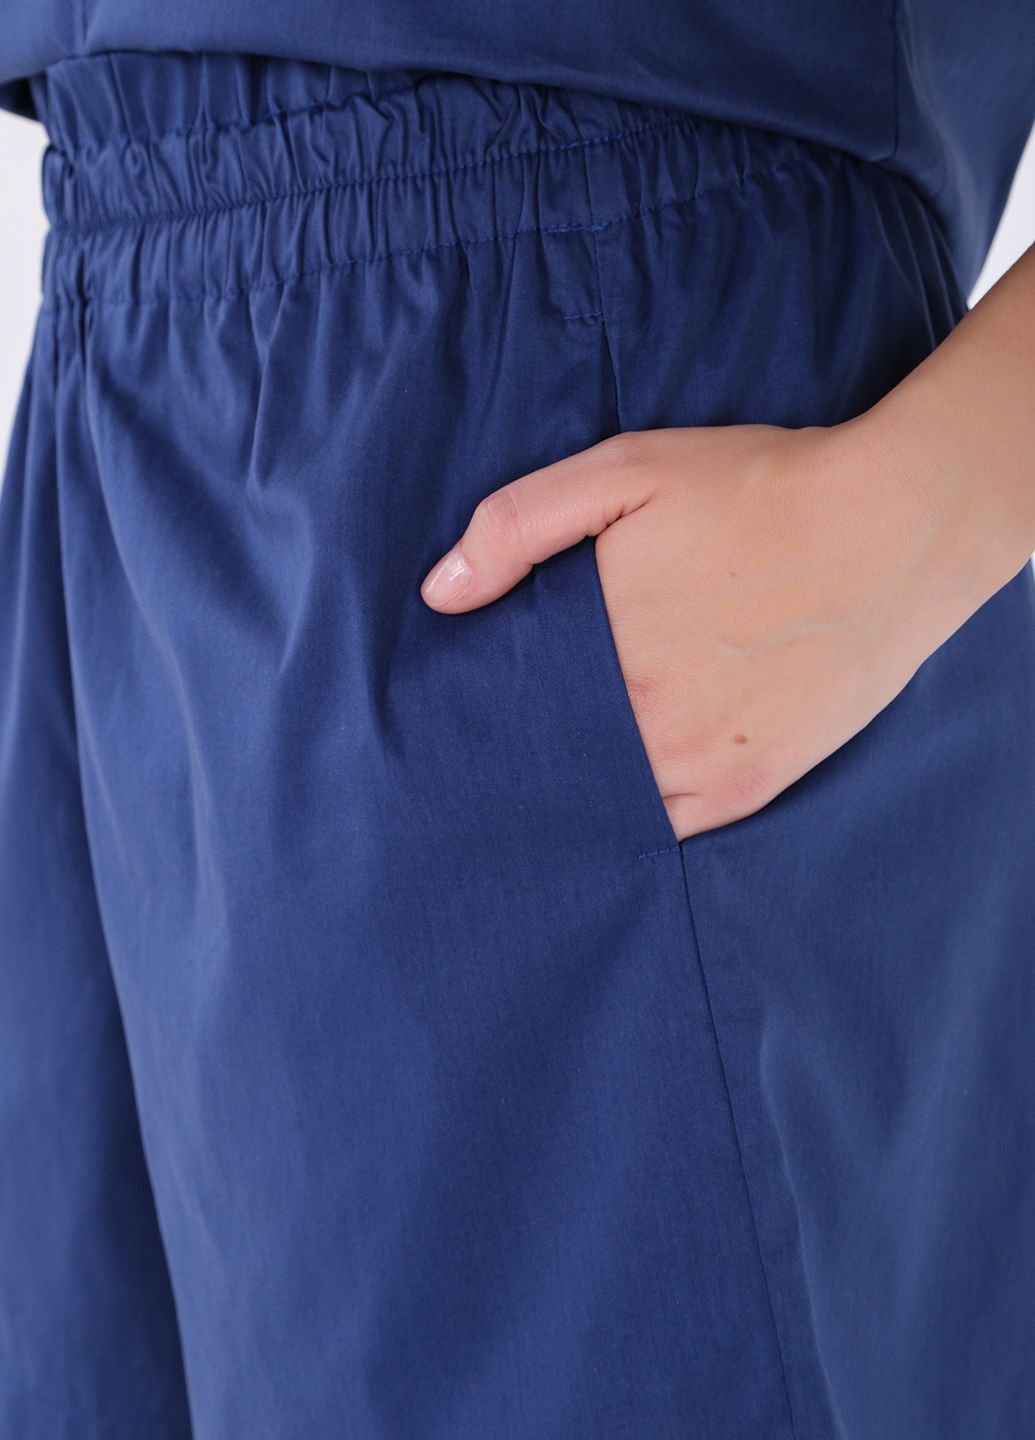 Купить Хлопковые шорты женские бермуды синего цвета Merlini Перуджа 300000052, размер 42-44 в интернет-магазине